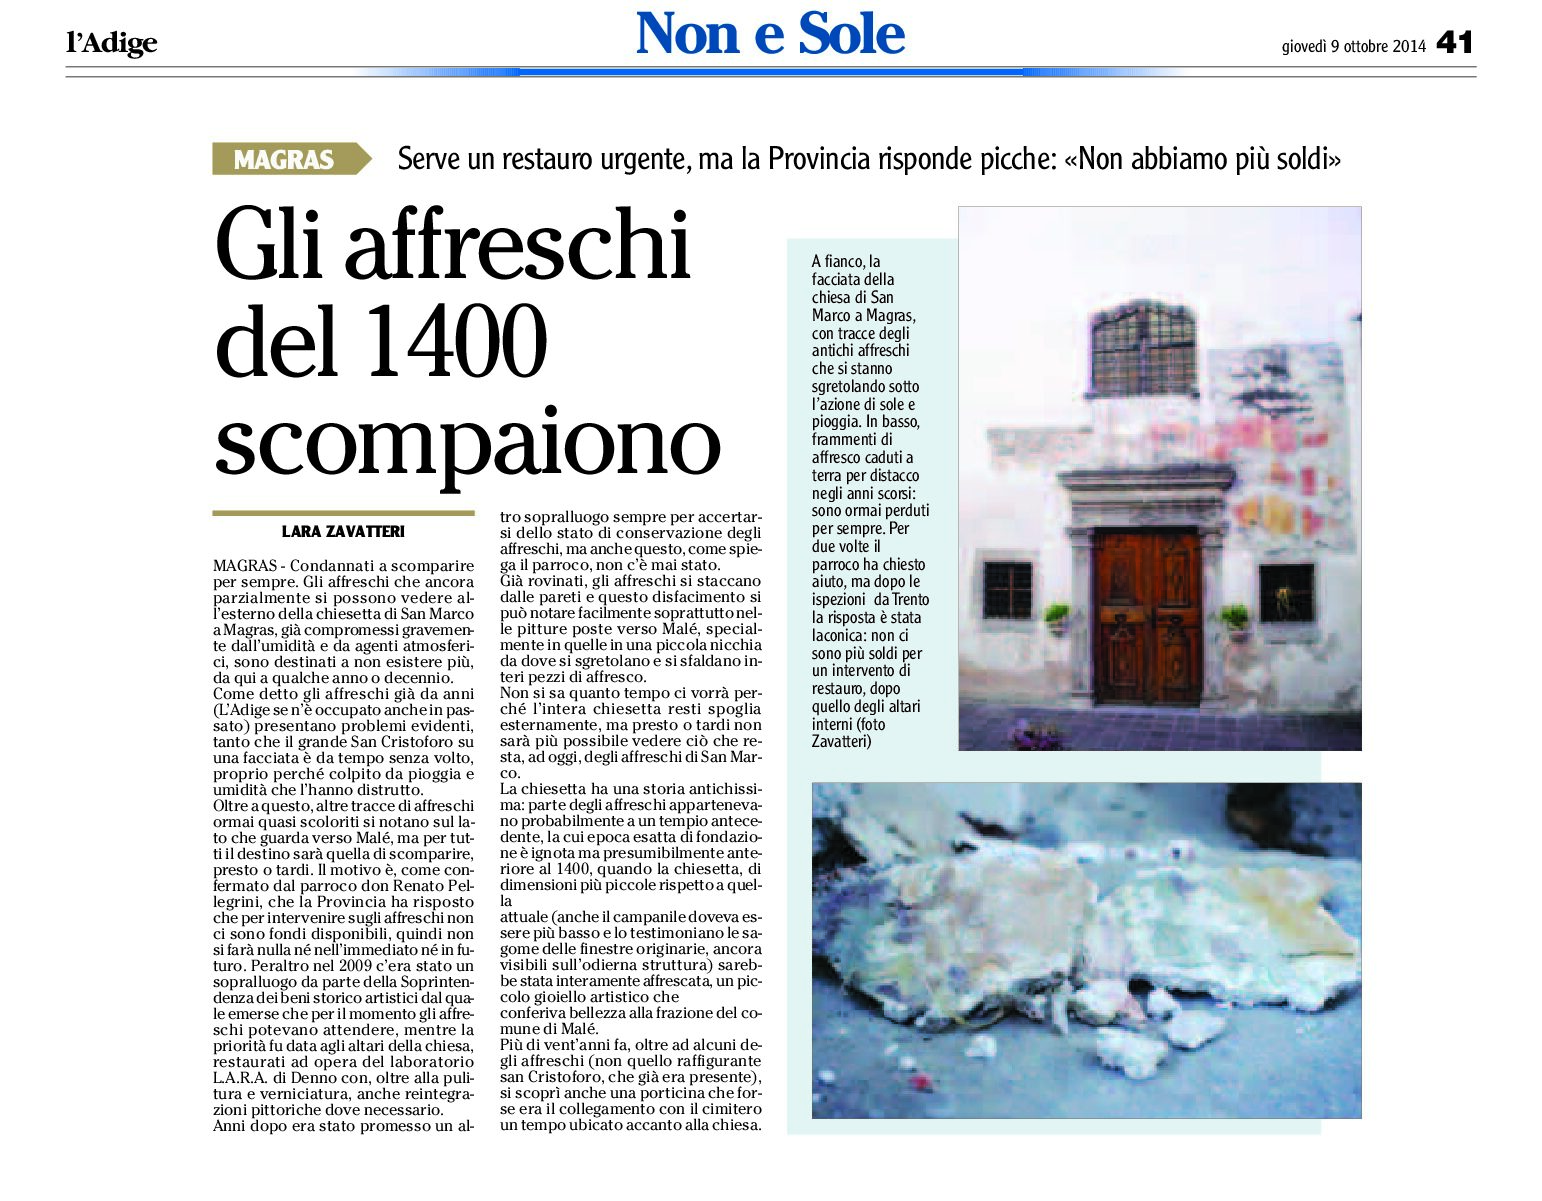 Magras, Val di Sole: scompaiono gli affreschi della chiesetta di San Marco